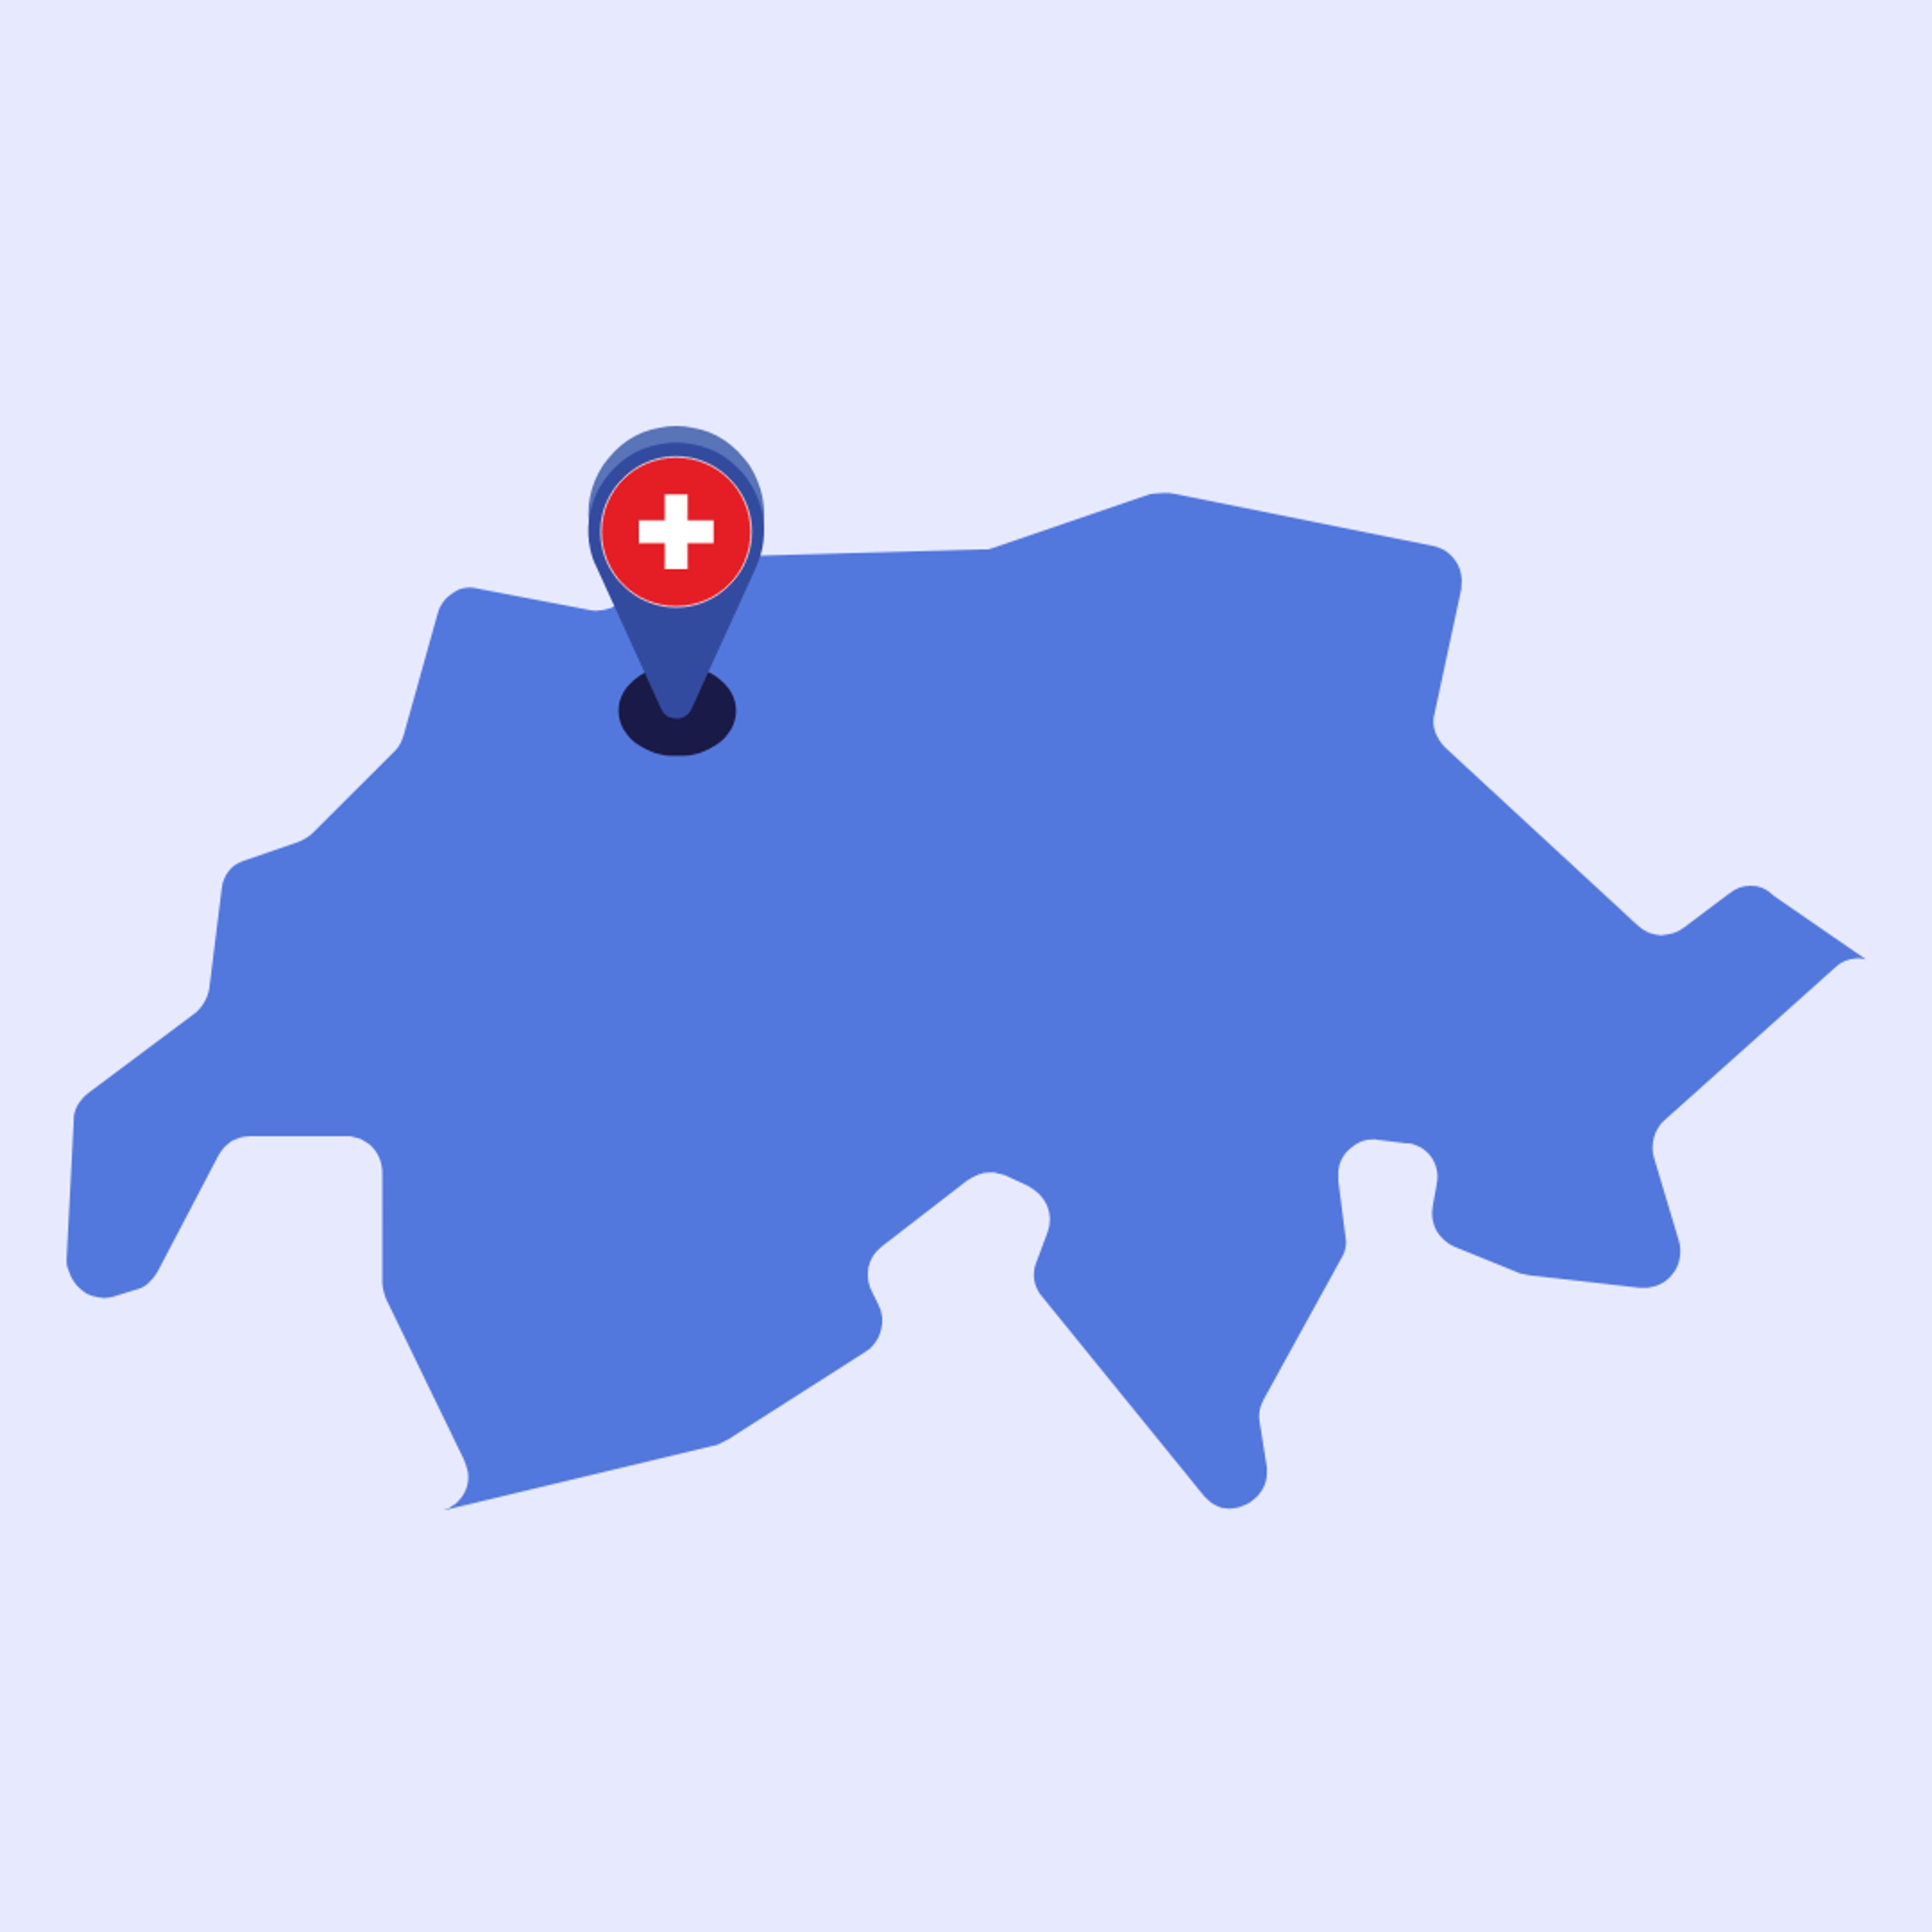 Karte der Schweiz mit Pin in Baselland